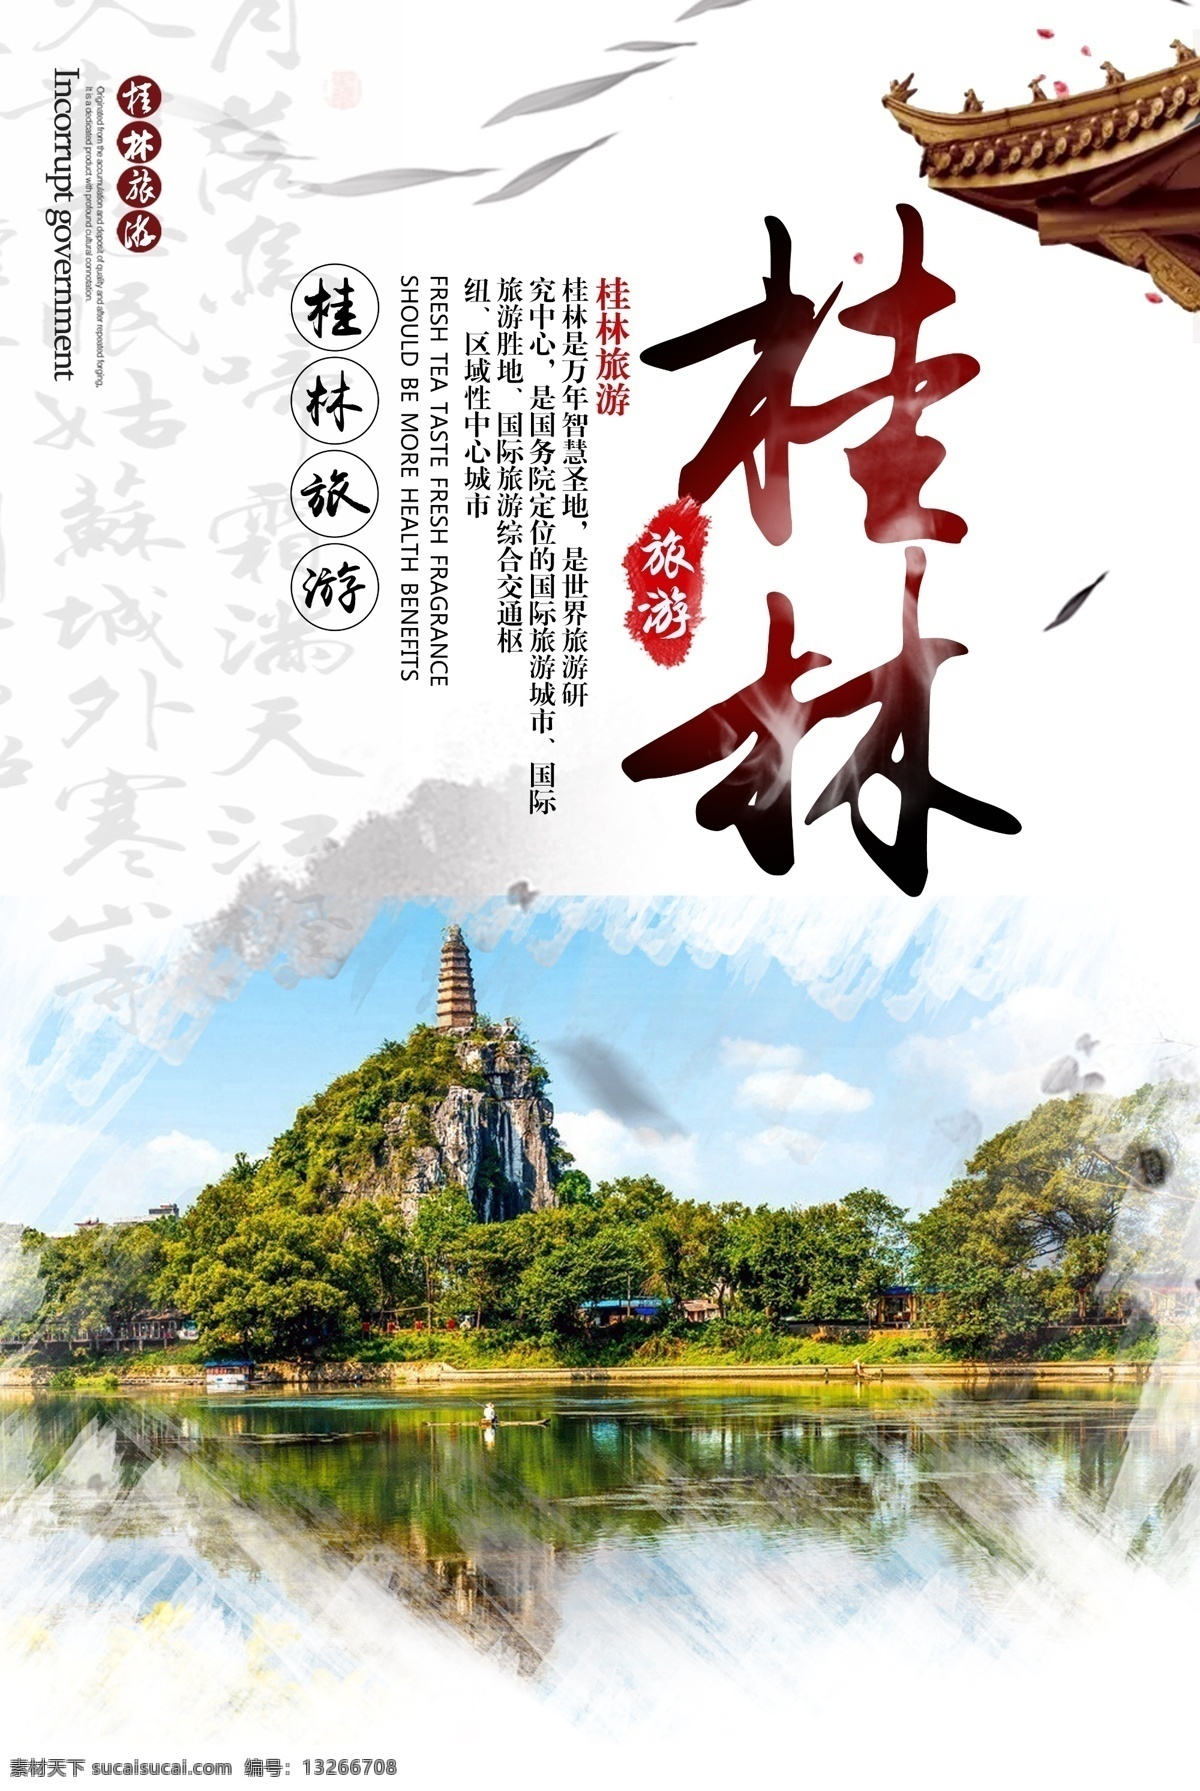 桂林旅游 psd模板 简约大气 水墨风 模板 清新风 宣传海报 桂林 山水 旅游 主题